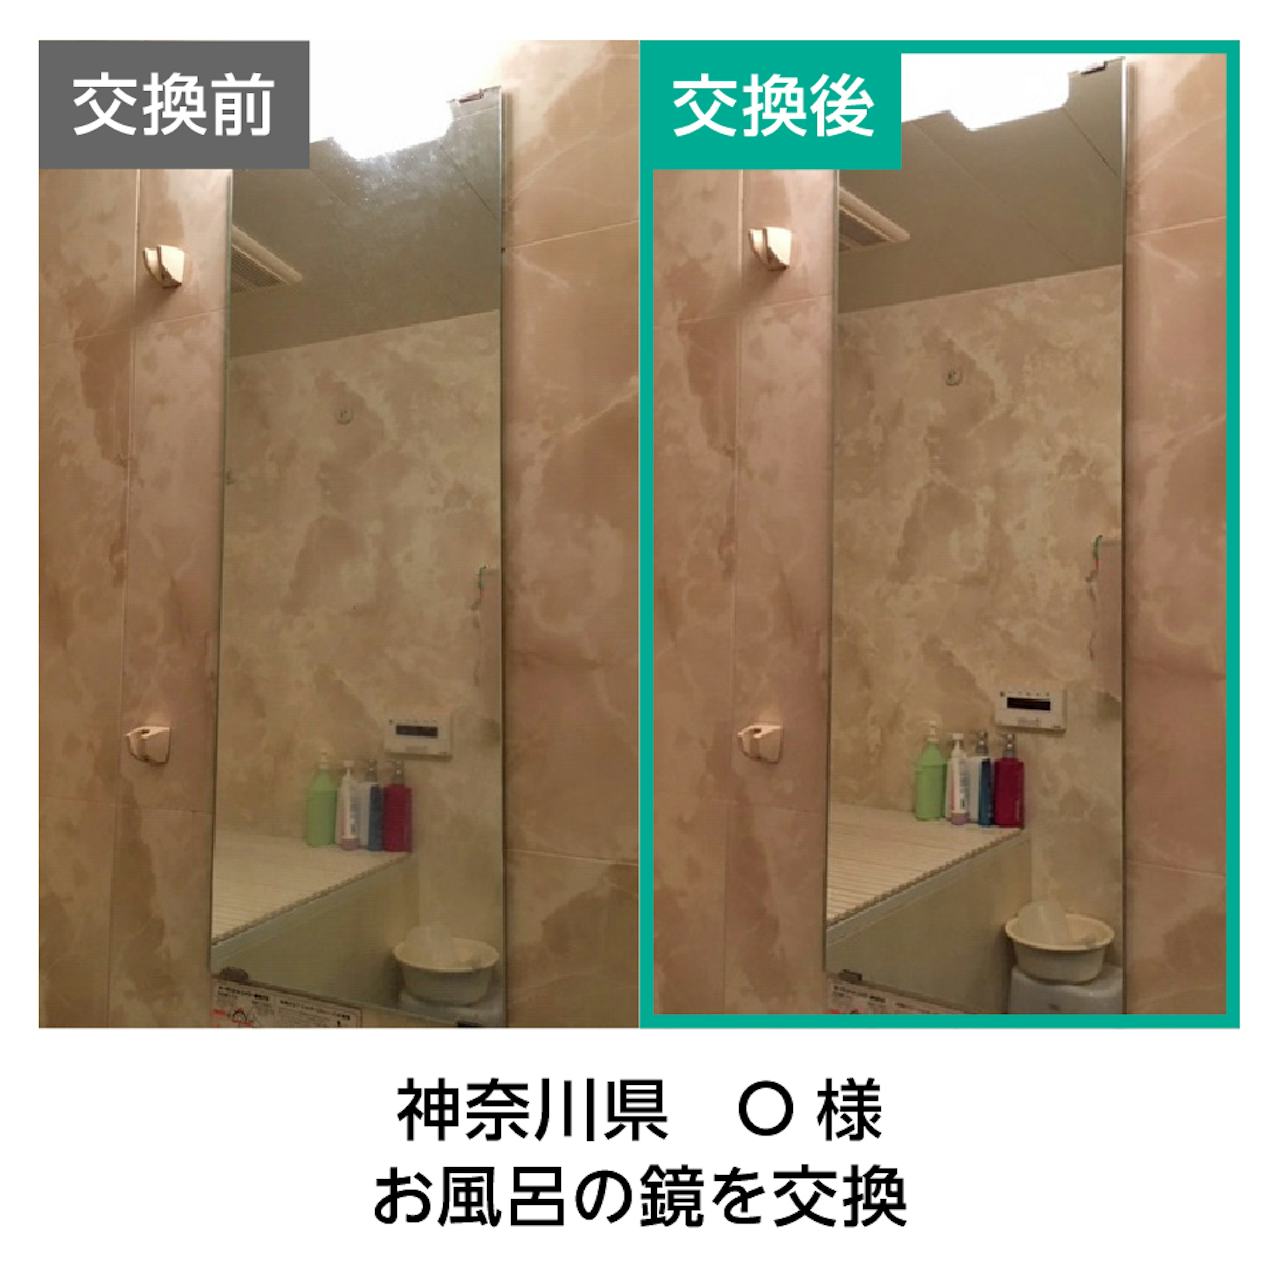 ウロコ(水垢)がついたお風呂の鏡を交換した事例(2)